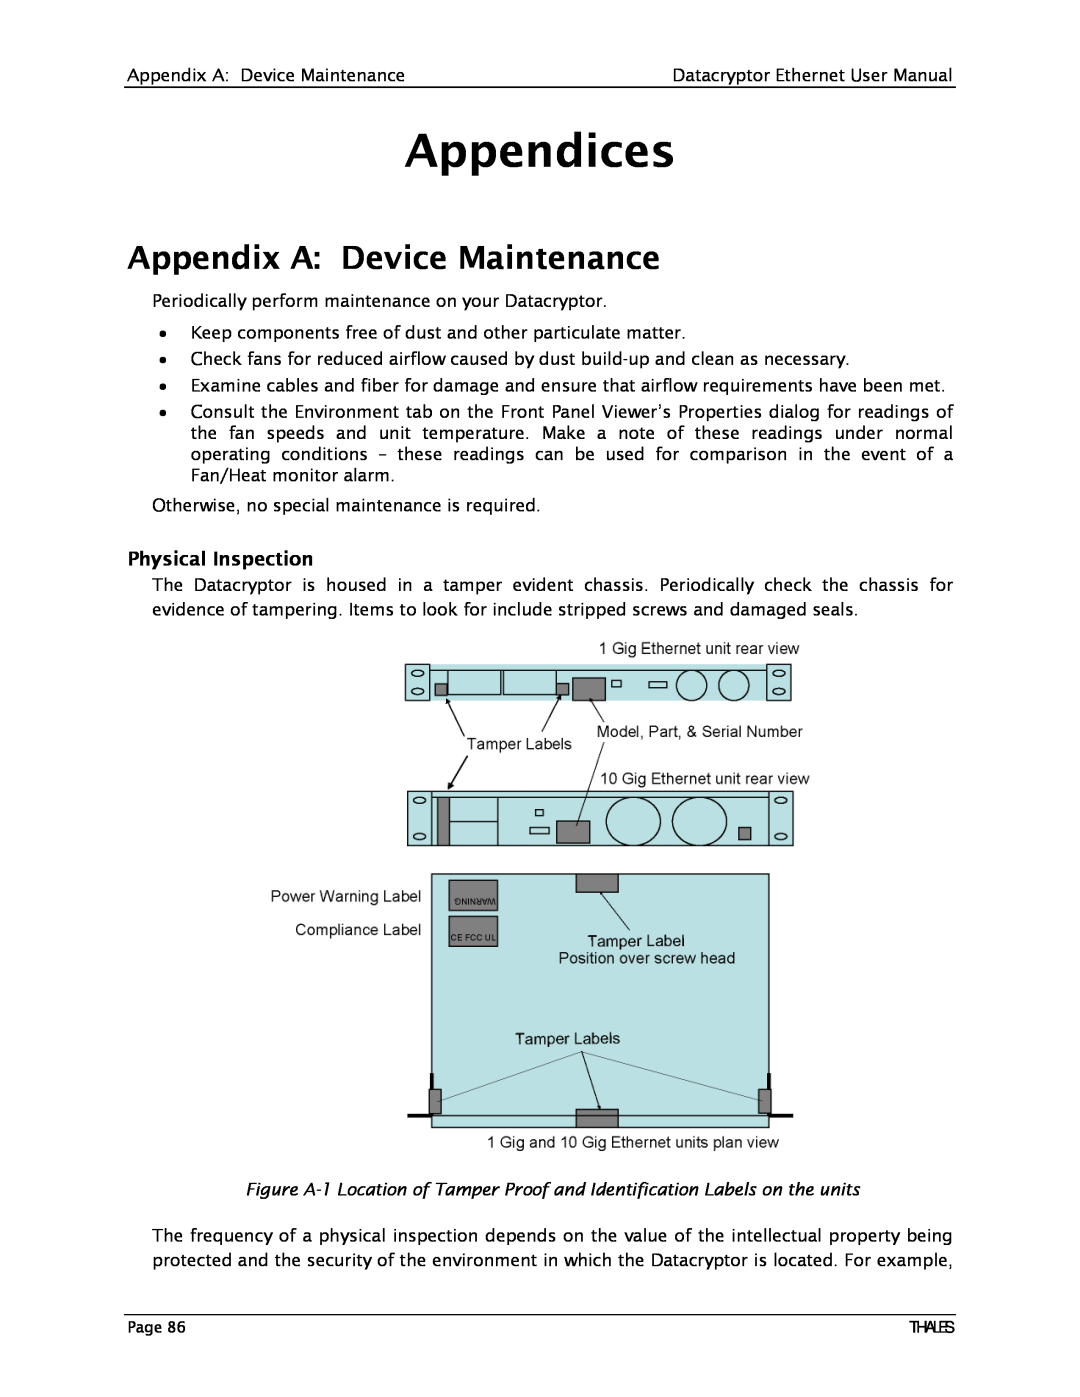 Angenieux 1270A450-005 user manual Appendix A Device Maintenance, Appendices 